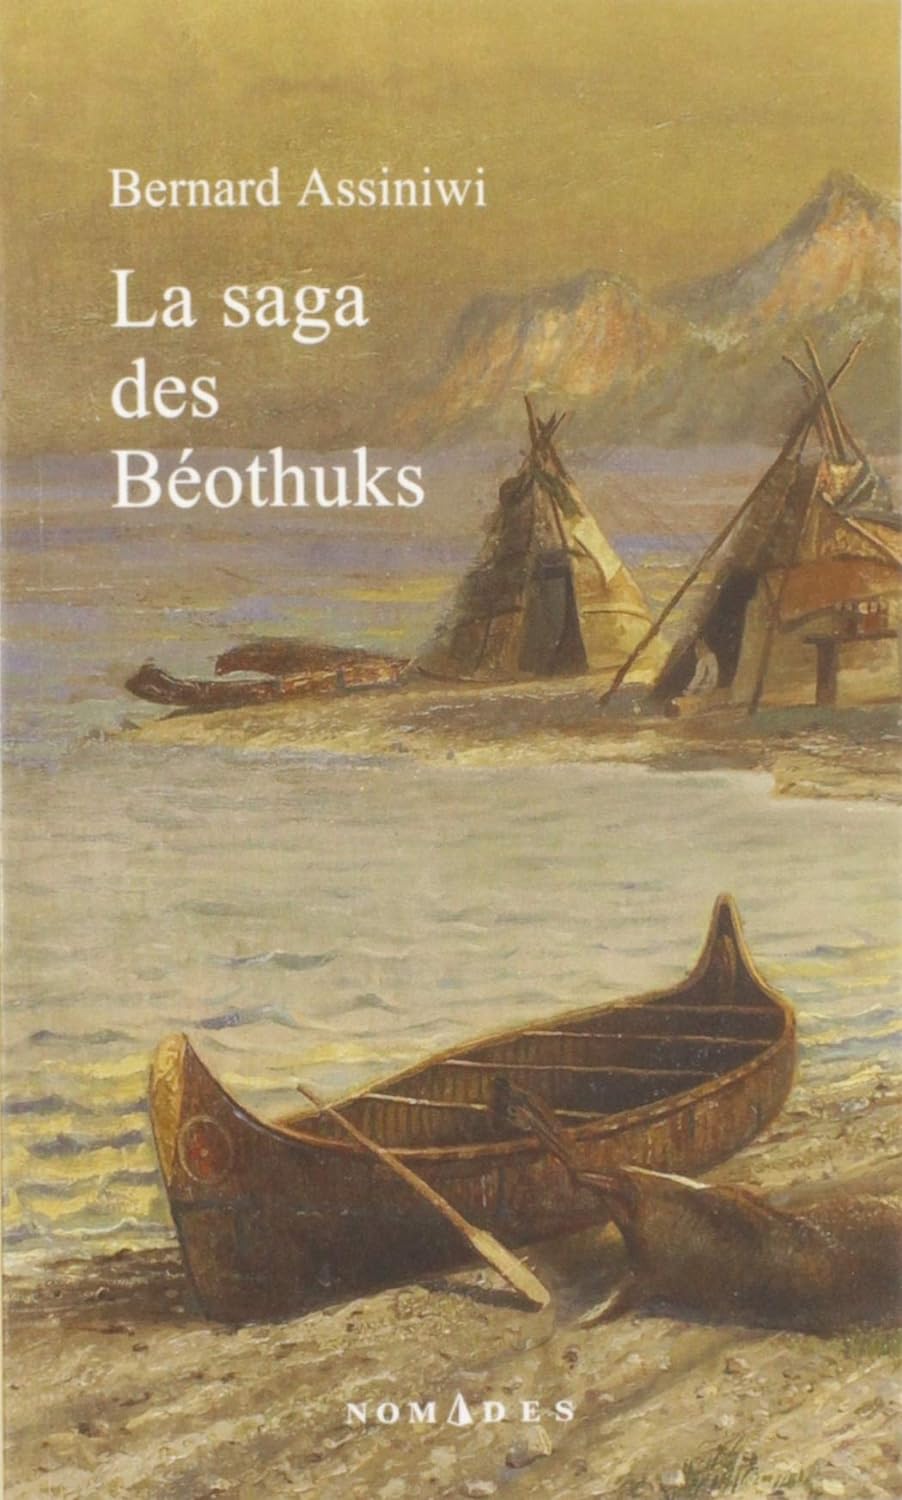 Livre ISBN  La saga des Béothuks (Bernard Assiniwi)